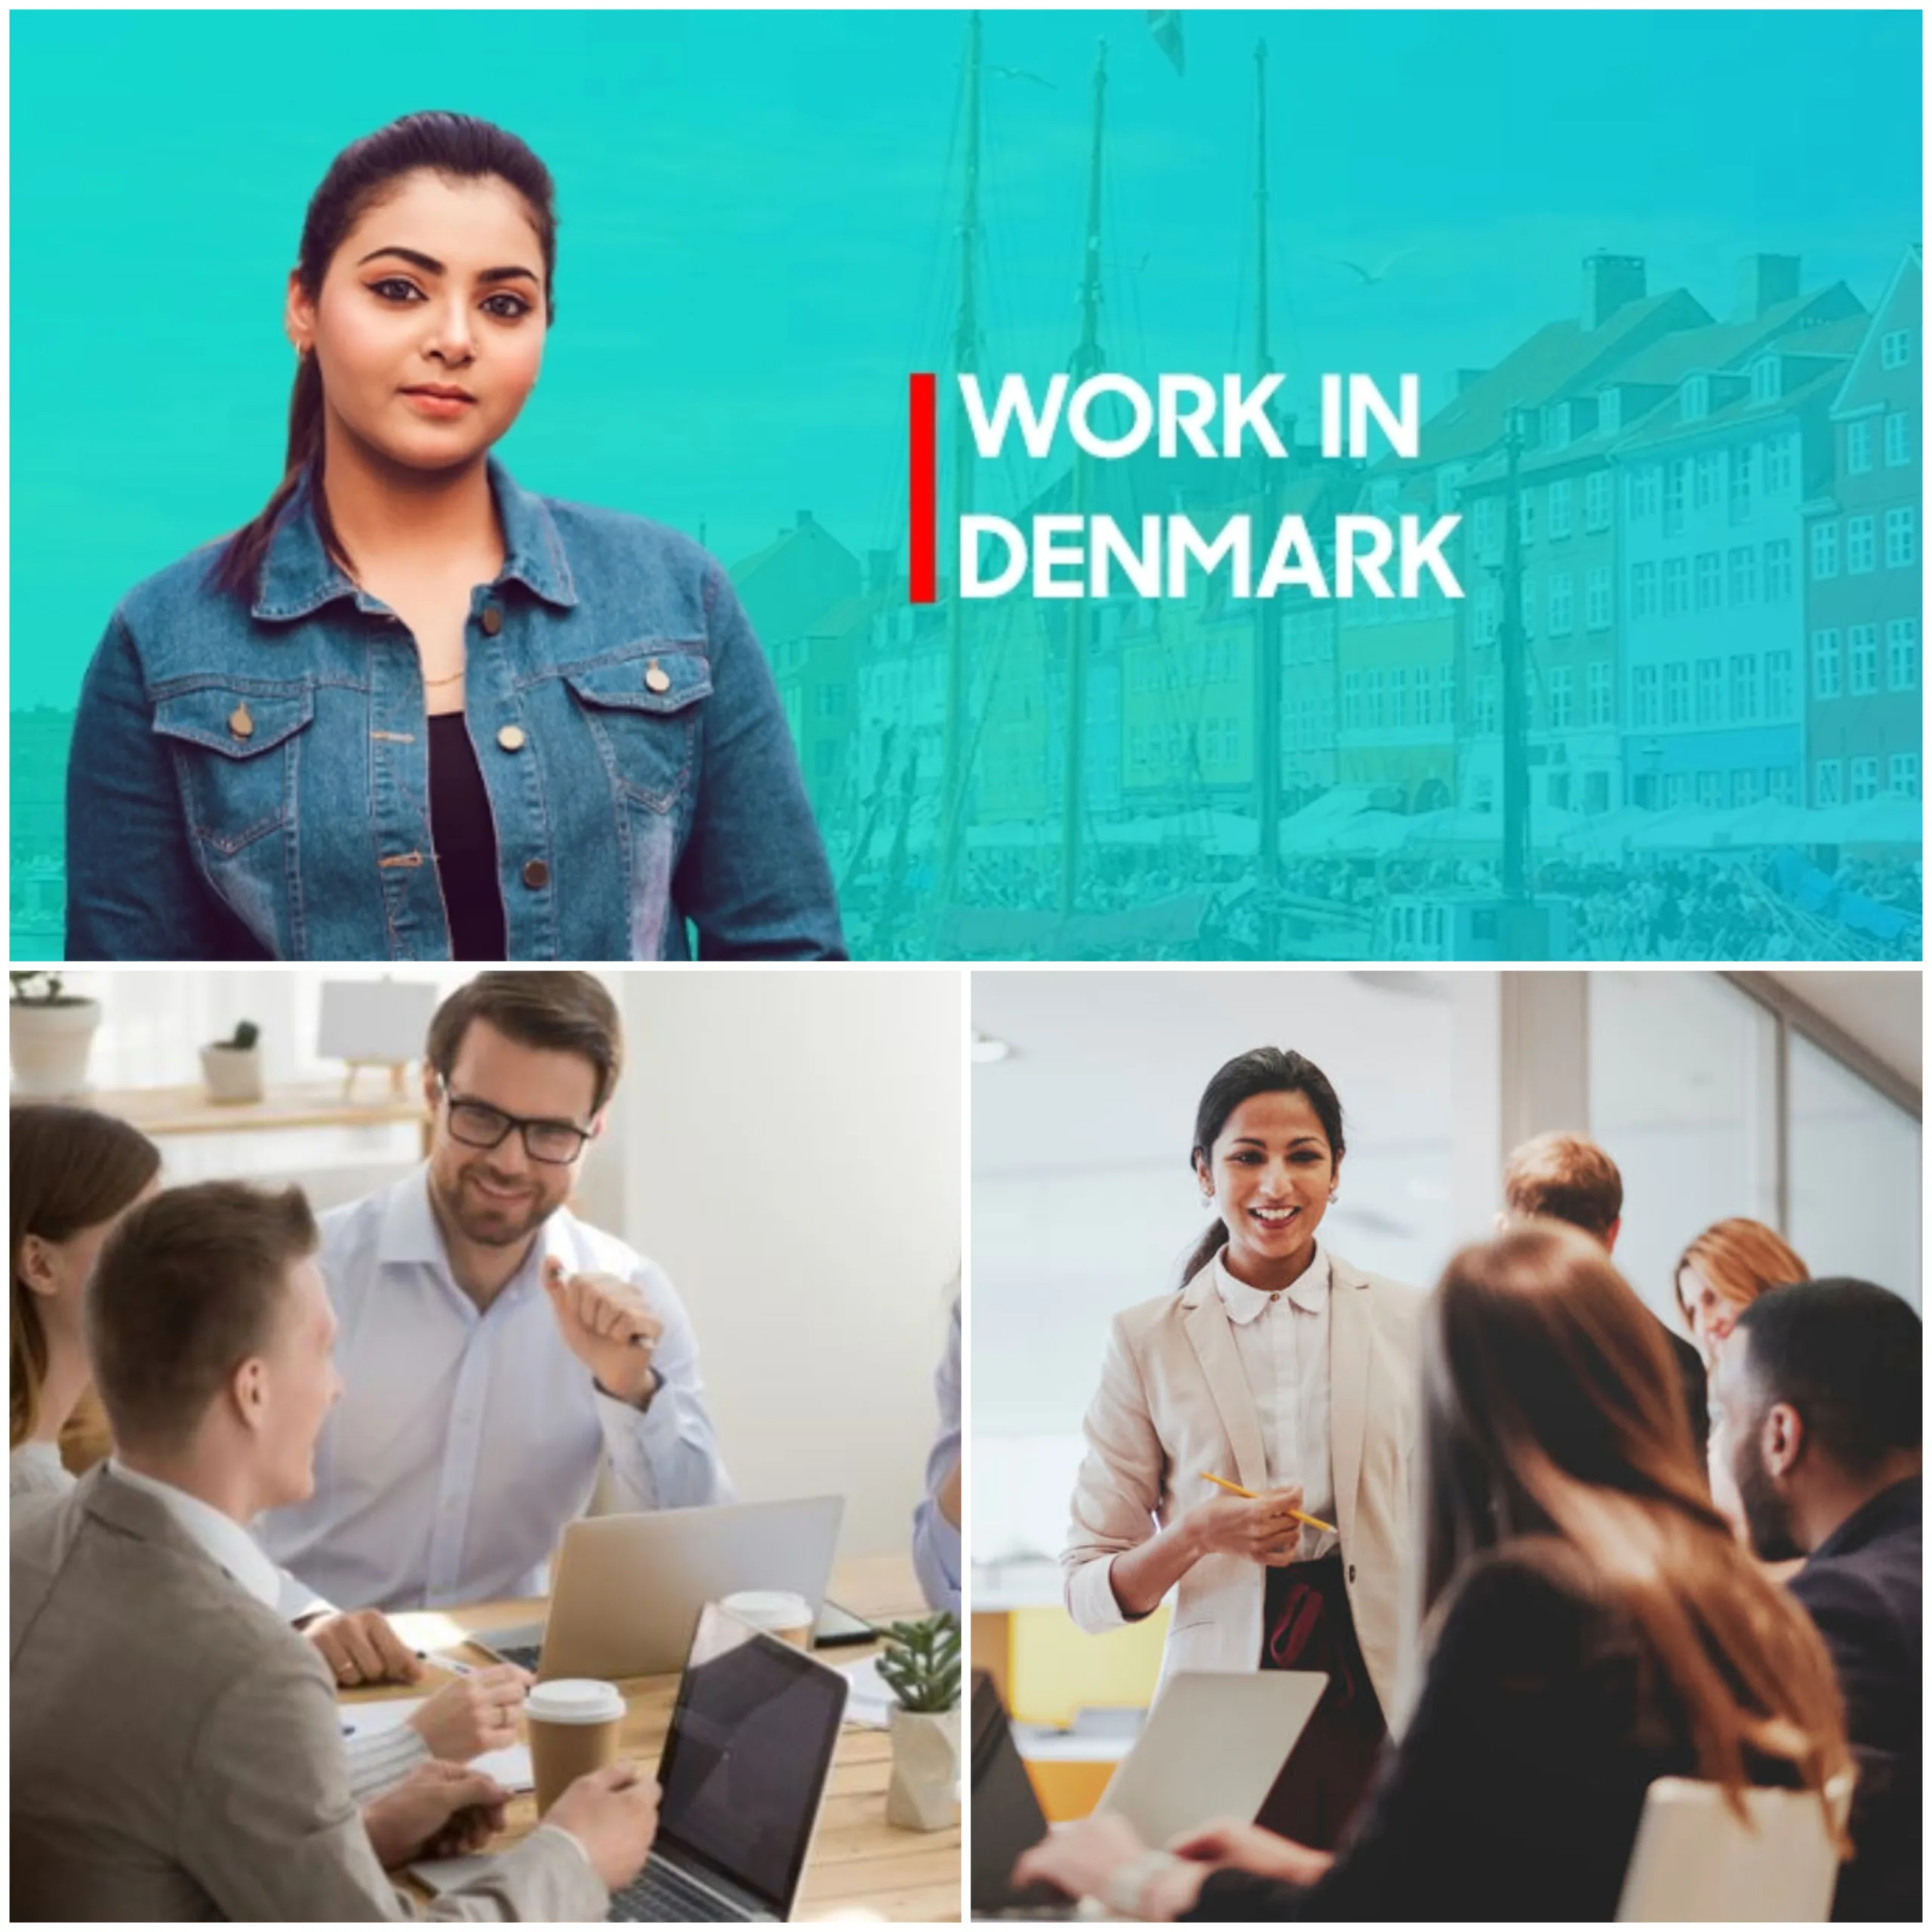 Work in Denmark